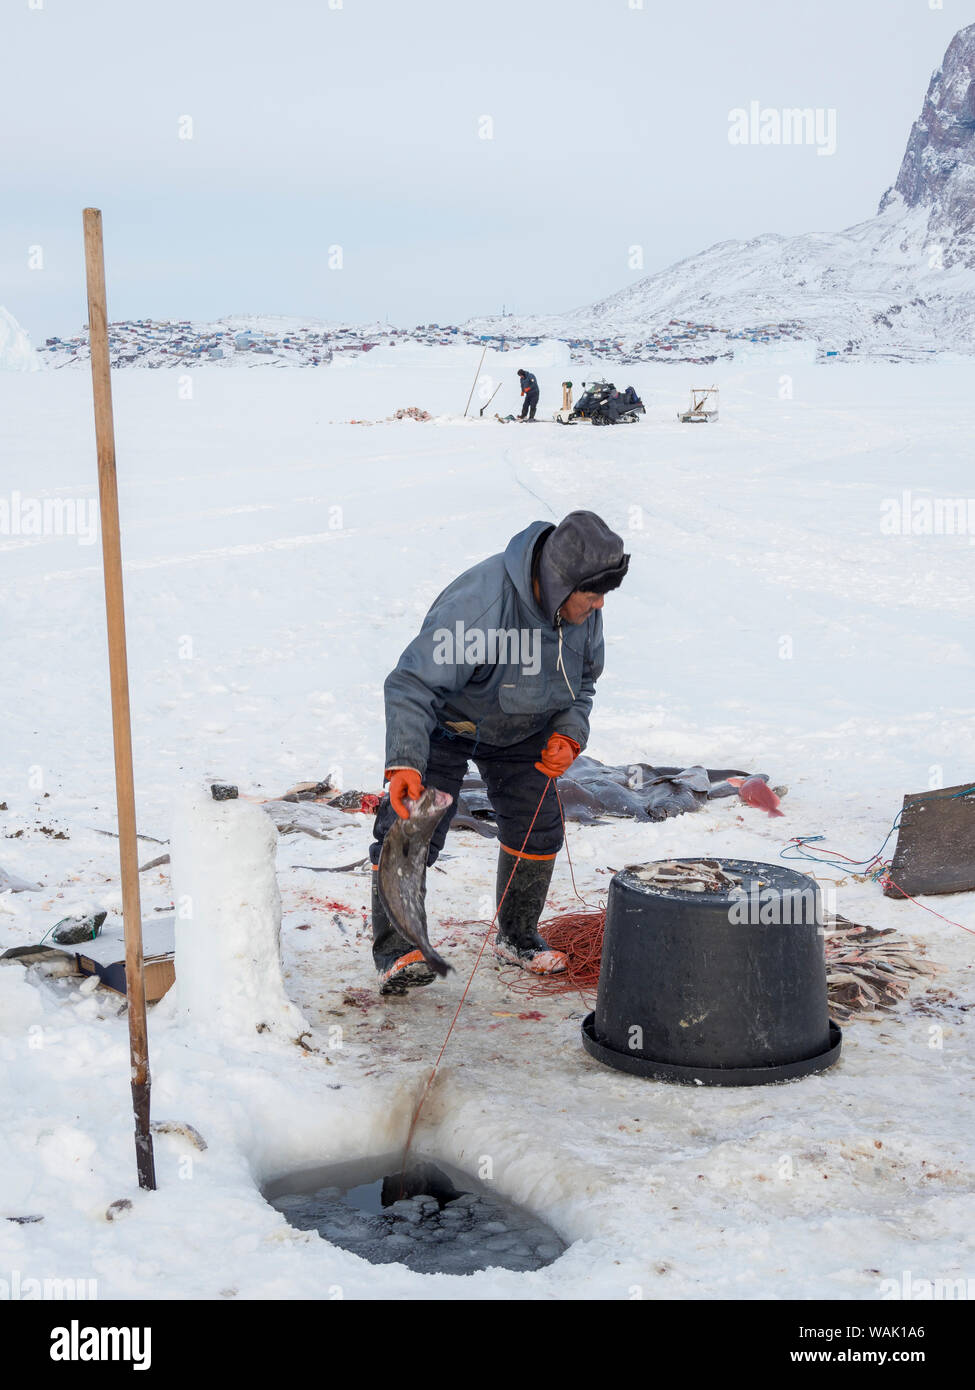 Les pêcheurs de l'Uummannaq au Groenland, système Fjord. Les fjords sont gelés en hiver, les pêcheurs utilisent des traîneaux à conduire à des trous dans la glace. Ils lignes inférieures avec appât jusqu'à 1000 mètres. (Usage éditorial uniquement) Banque D'Images